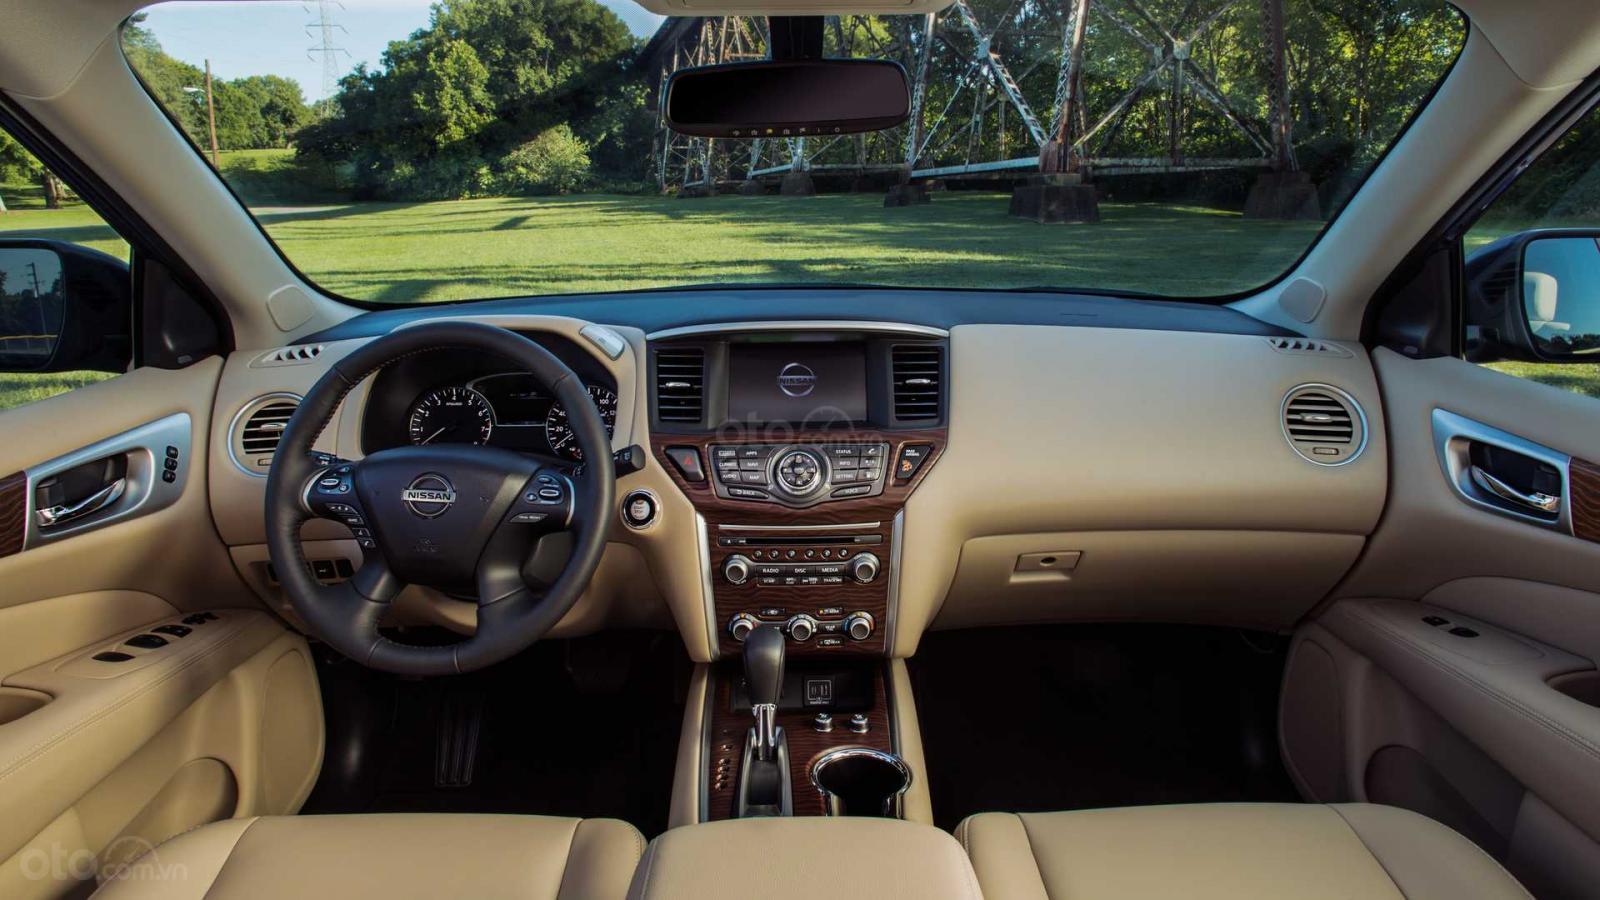 Nissan Pathfinder 2020 vẫn có nội thất có phần hoài cổ